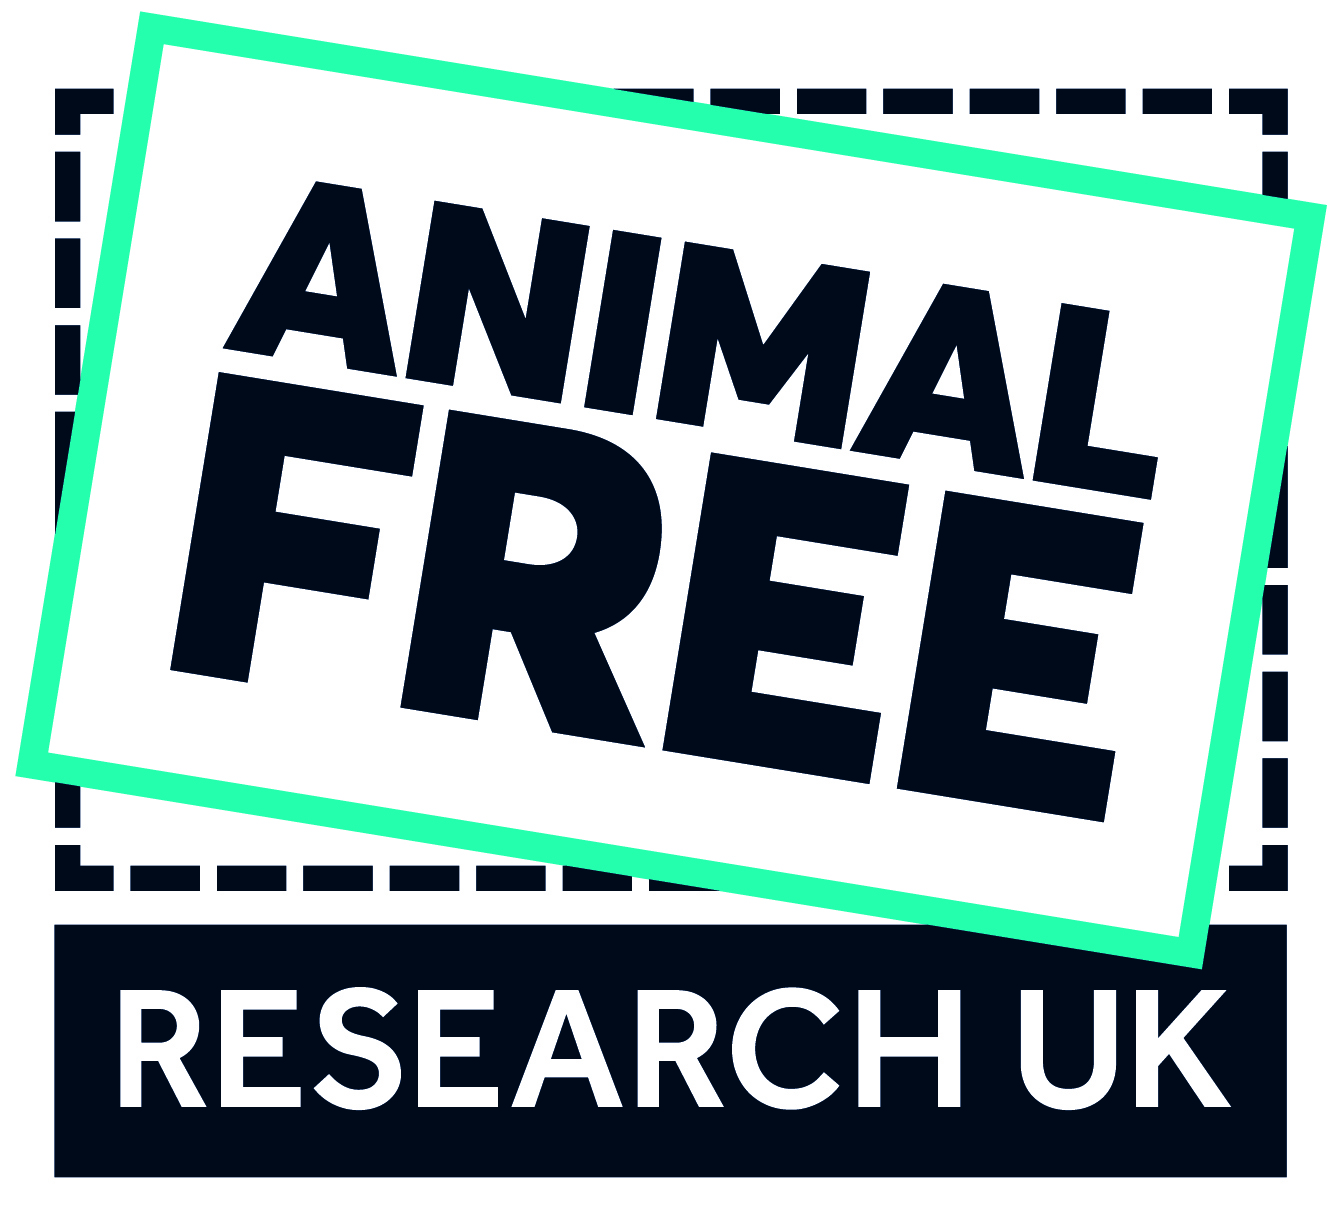 Animal Free Research UK